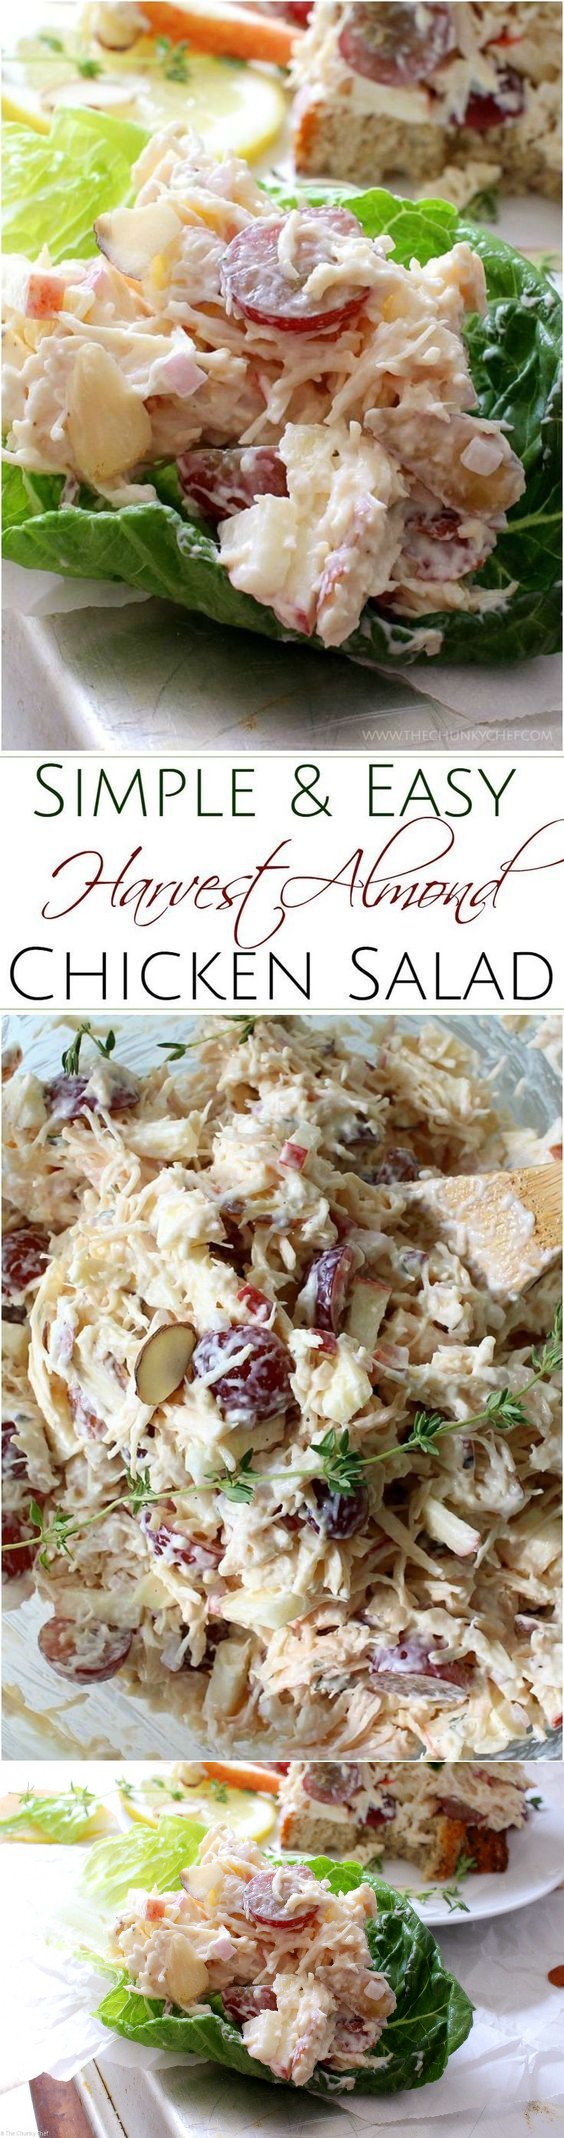 Easy Harvest Almond Chicken Salad